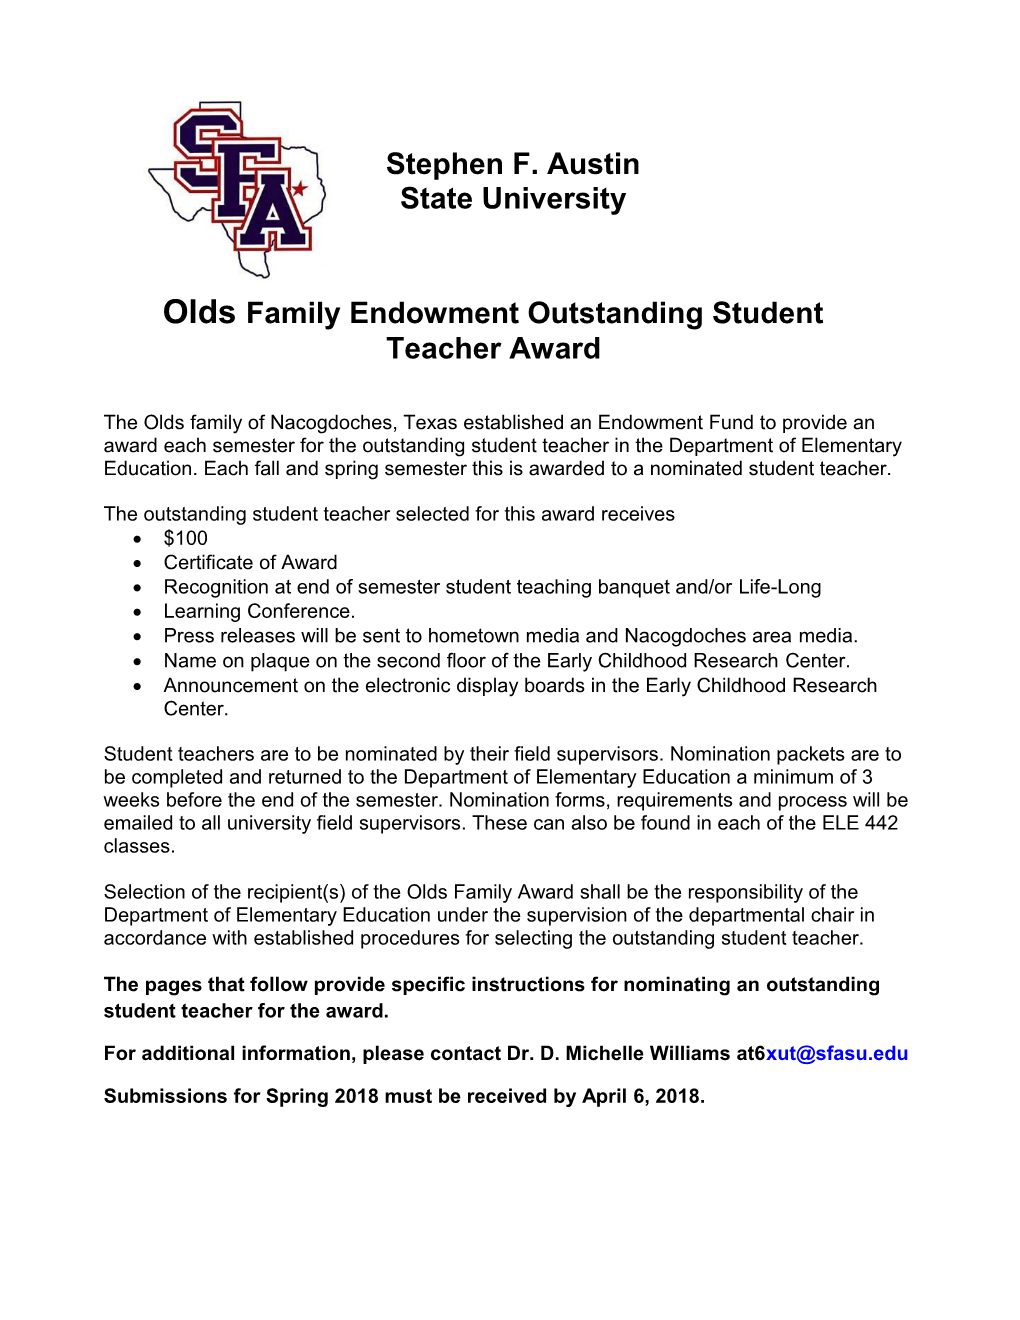 Olds Family Endowment Outstanding Student Teacher Award